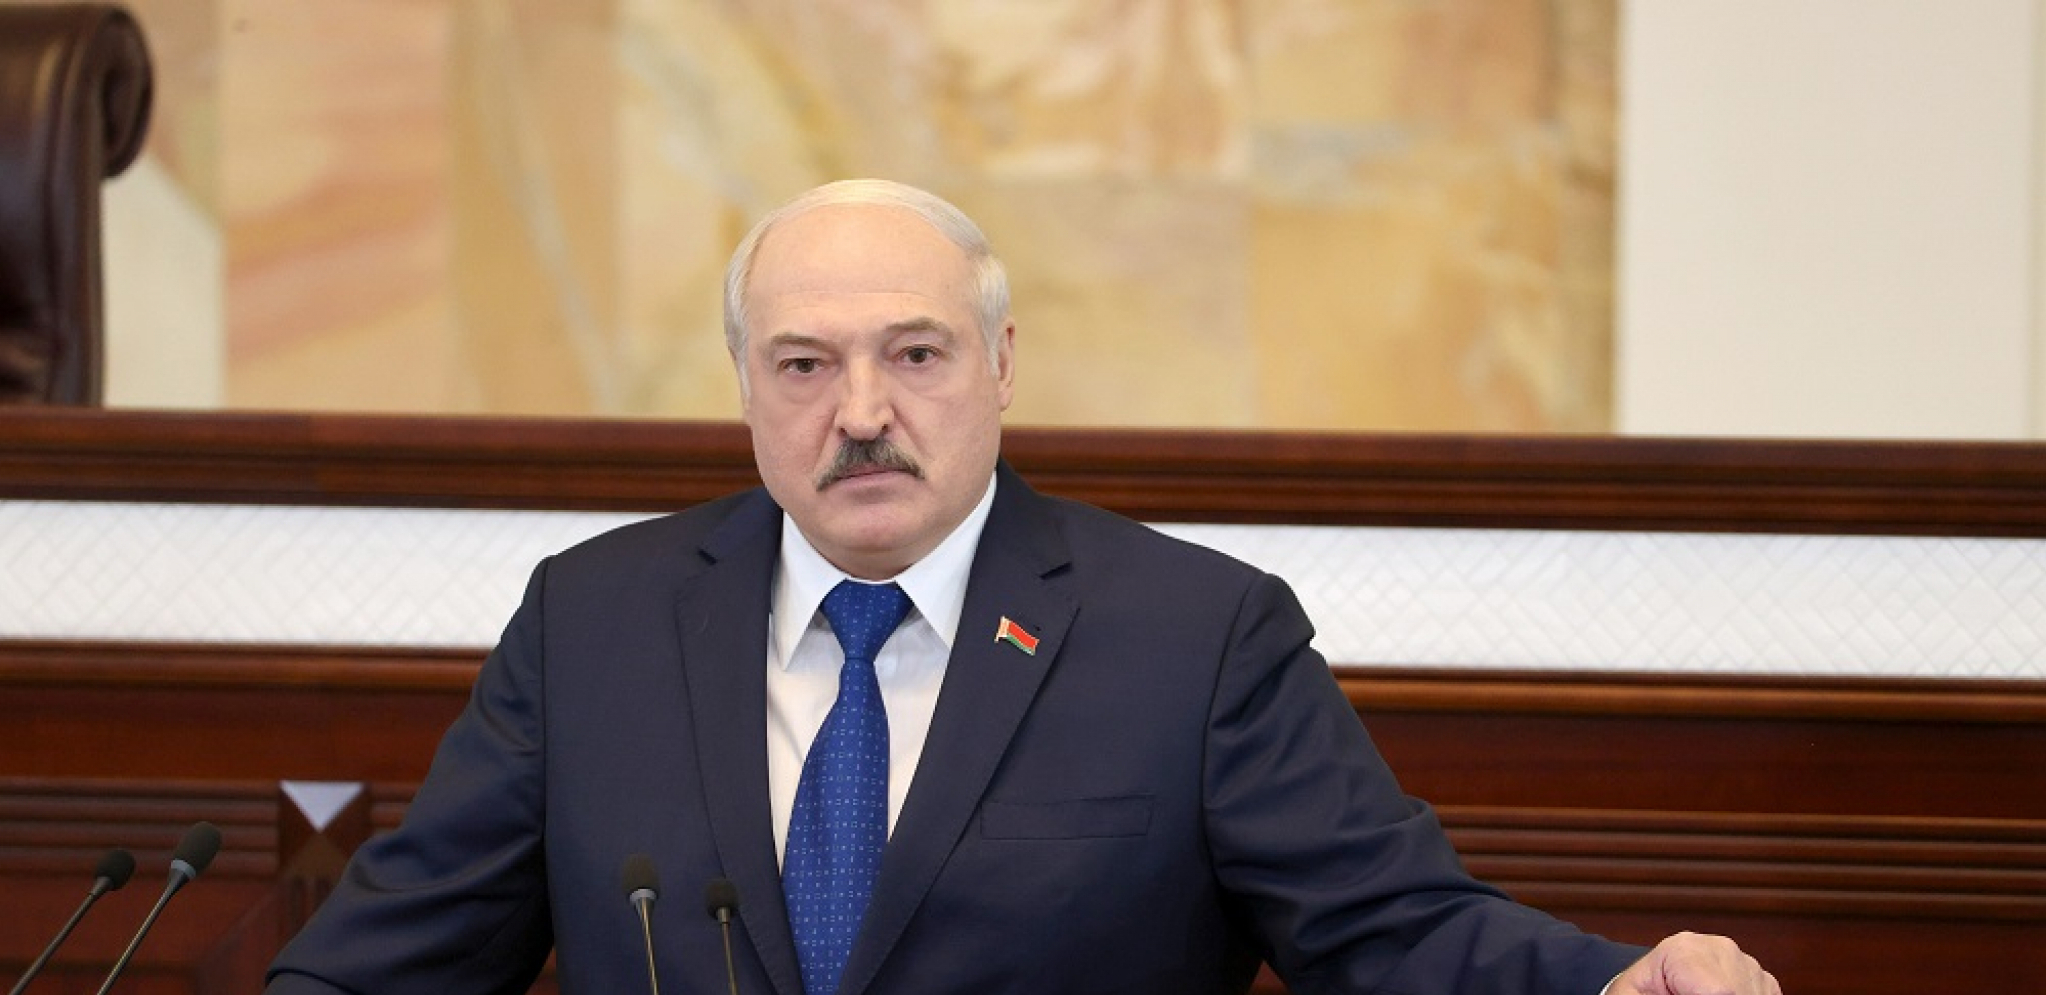 "IZGUBIĆETE RAT!" Lukašenko pozvao Zapad da se urazumi: Hoćete da nas testirate? Hajde da vidimo!